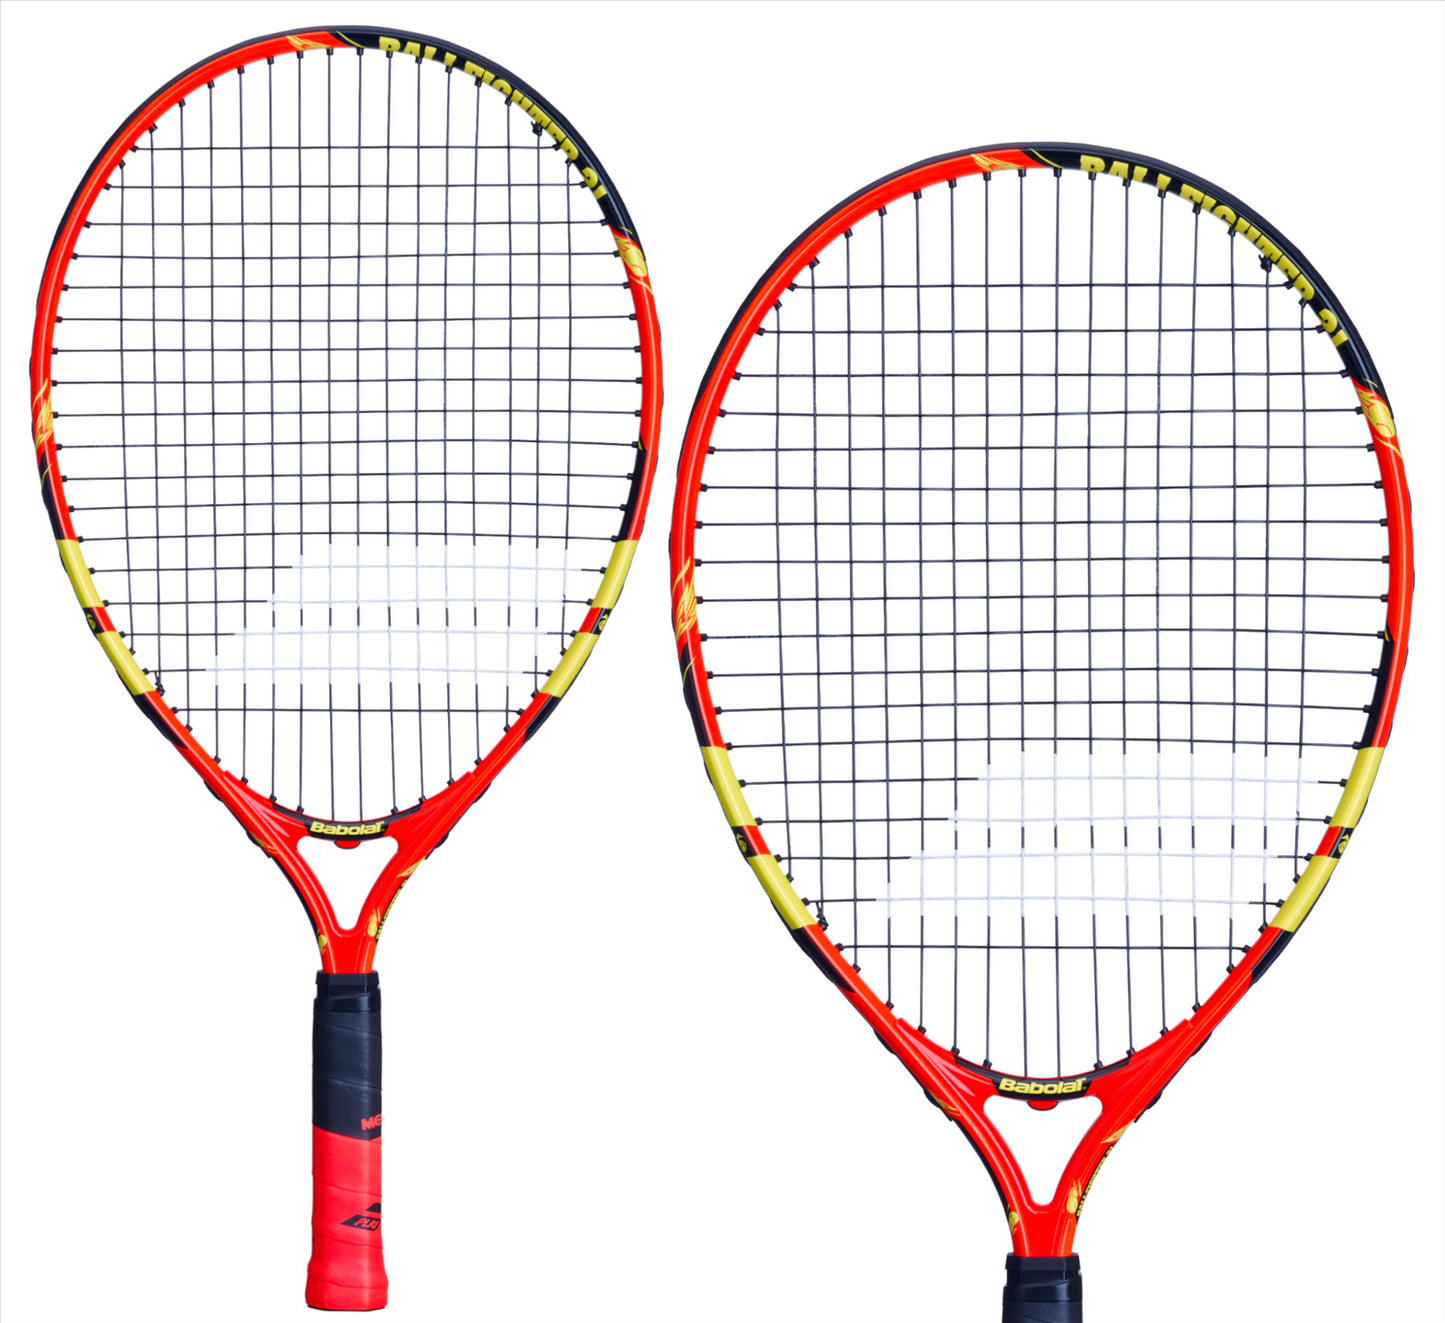 Babolat Ballfighter 21 Tennis Racket - Orange / Black / Yellow